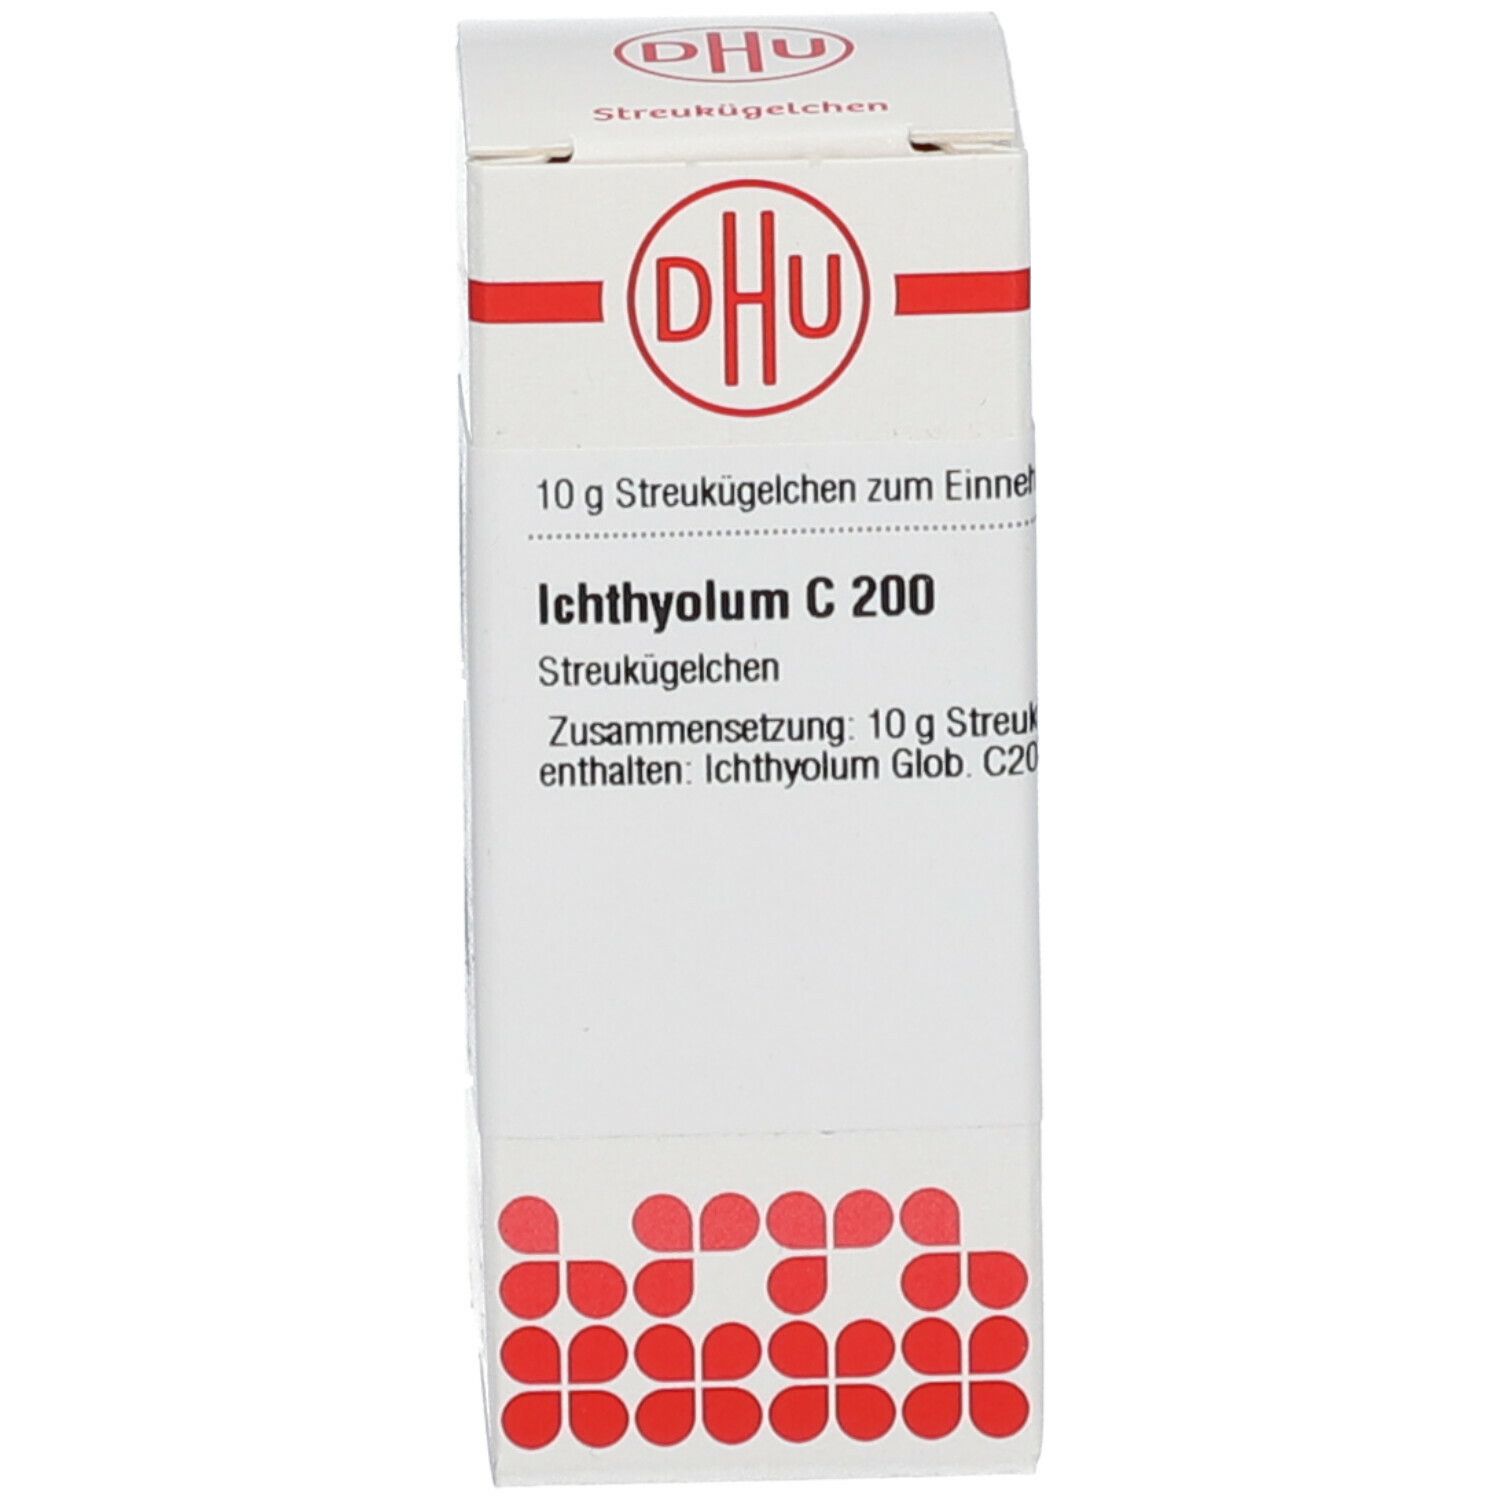 DHU Ichthyolum C200